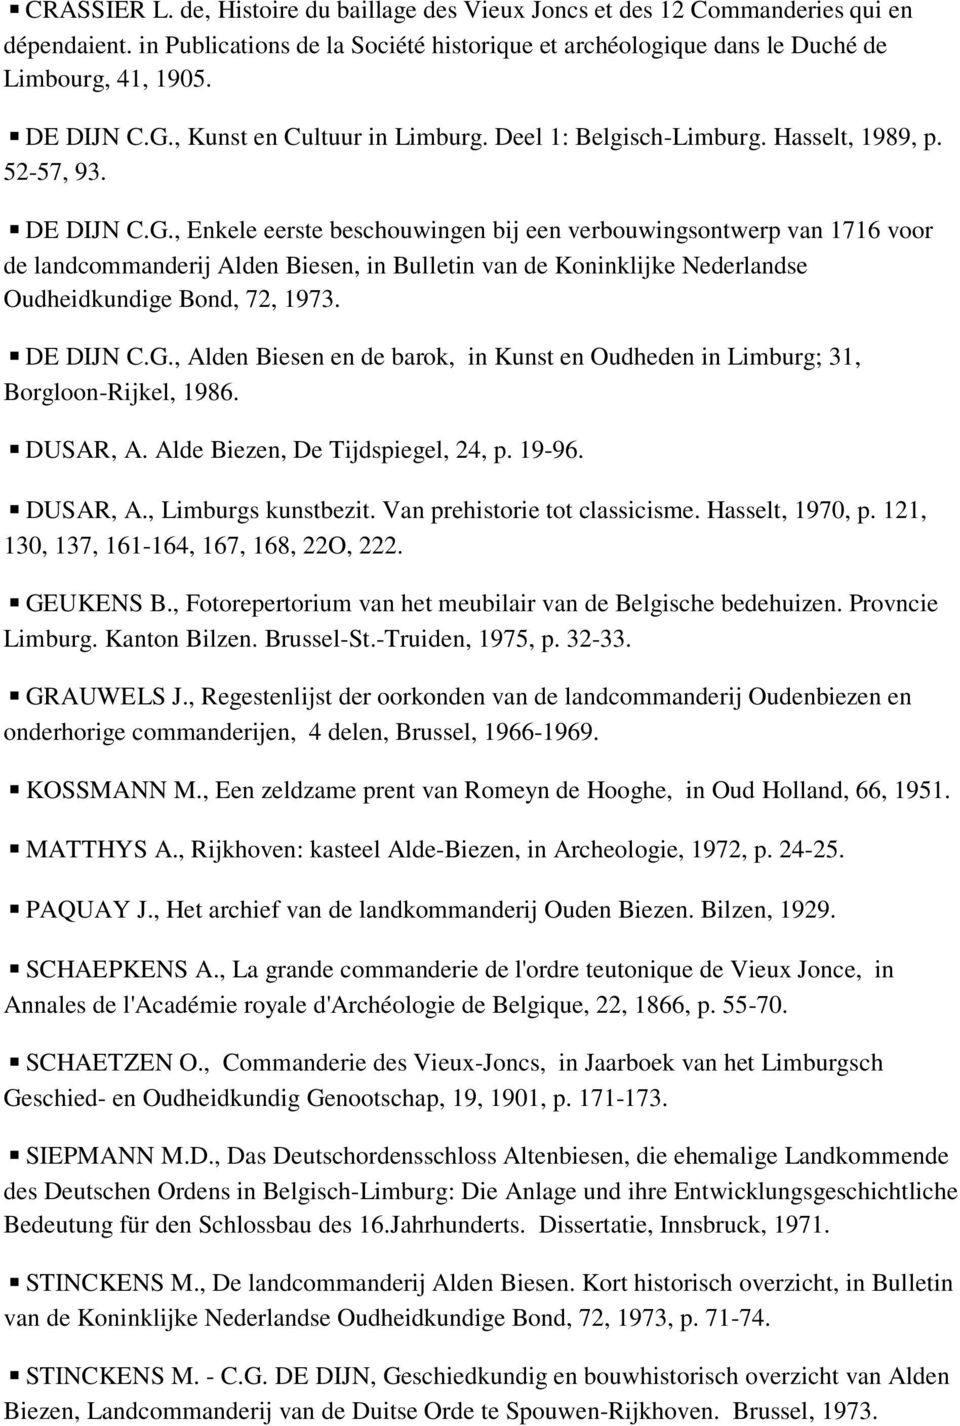 DE DIJN C.G., Alden Biesen en de barok, in Kunst en Oudheden in Limburg; 31, Borgloon-Rijkel, 1986. DUSAR, A. Alde Biezen, De Tijdspiegel, 24, p. 19-96. DUSAR, A., Limburgs kunstbezit.